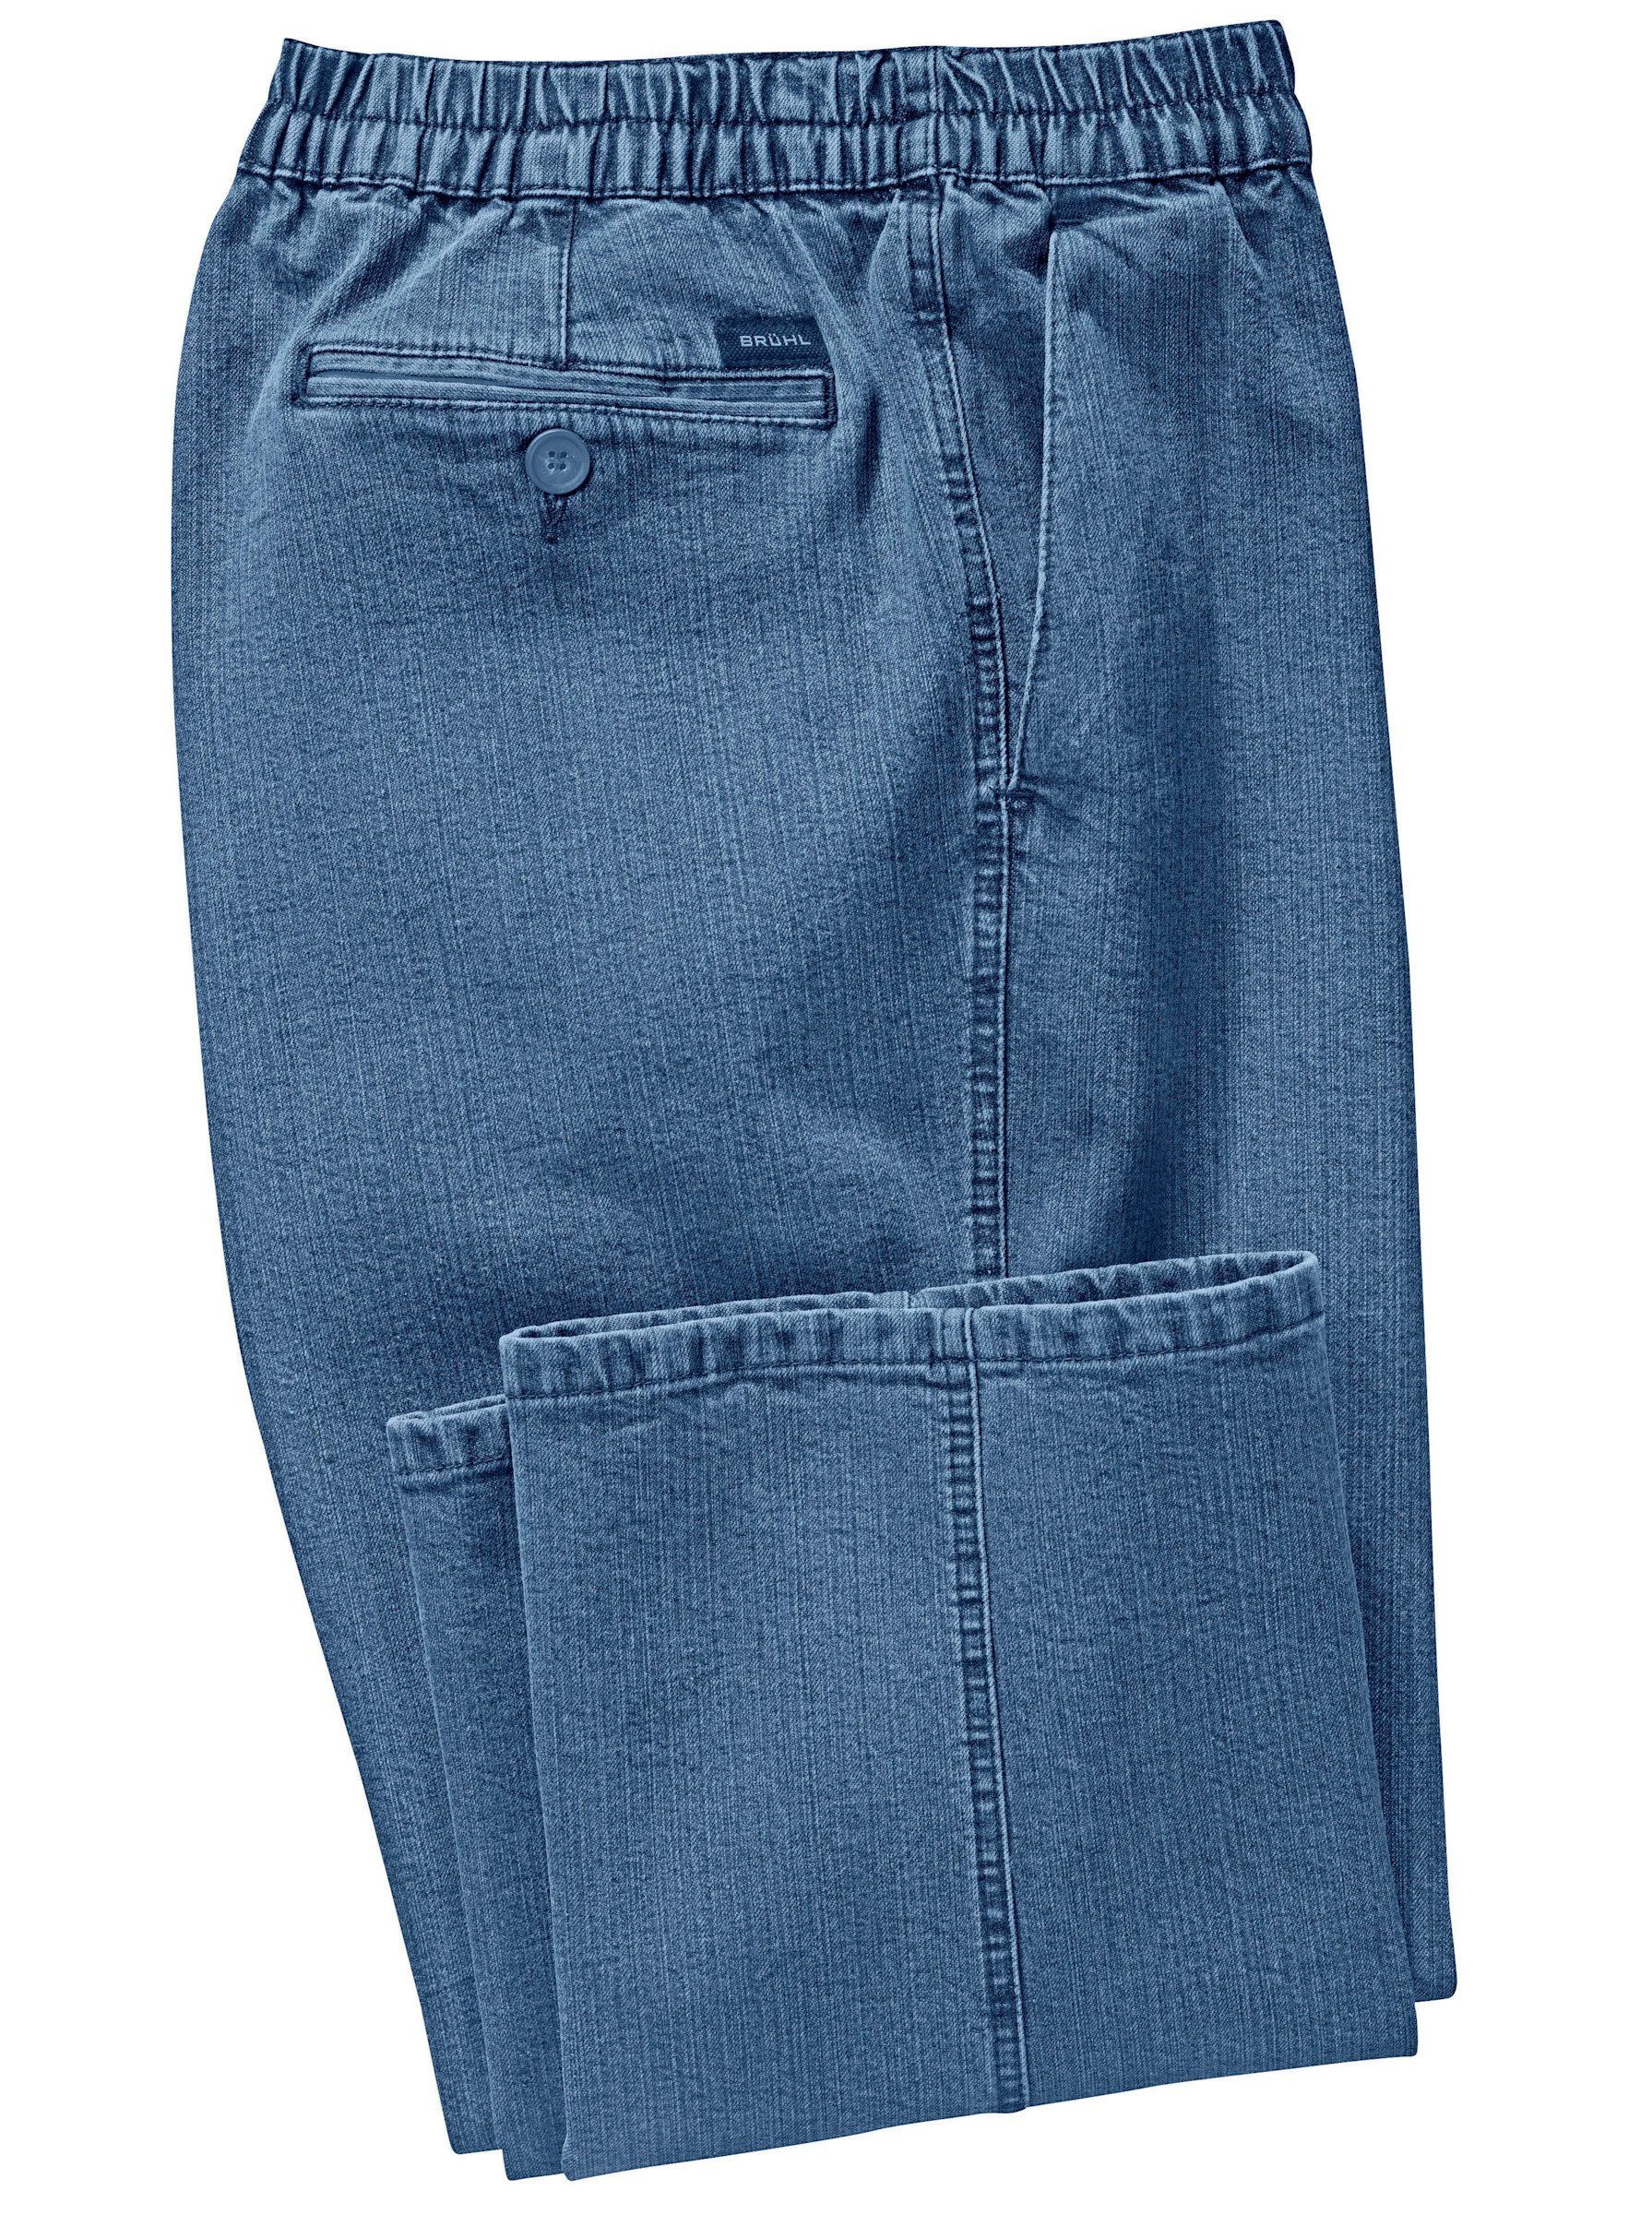 Jeans blue-bleached Brühl Bequeme